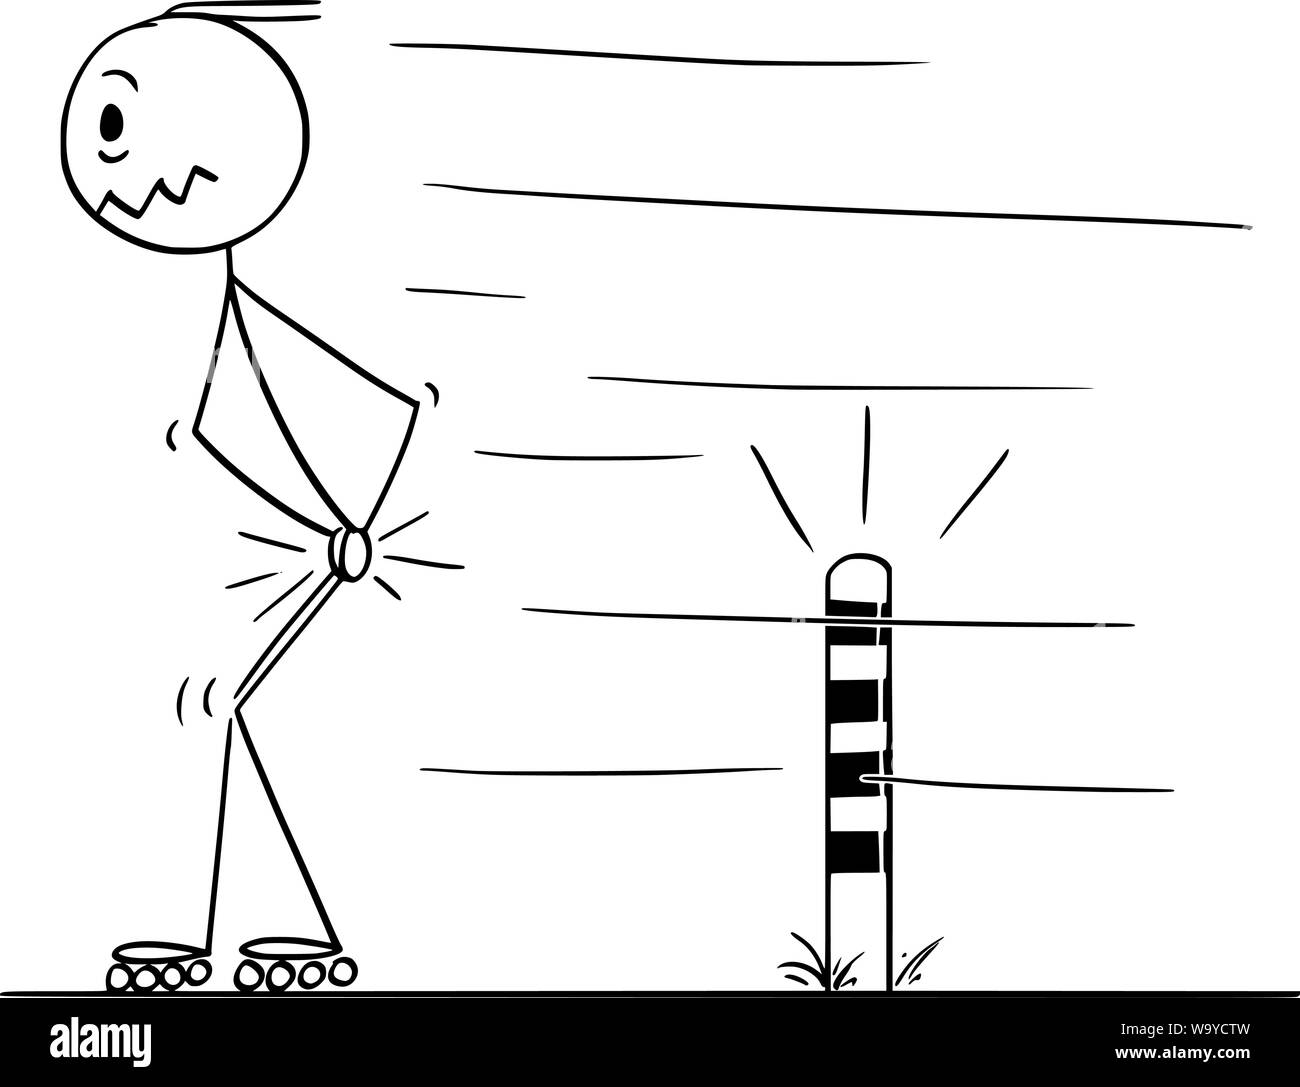 Vector cartoon stick figura disegno illustrazione concettuale dell'uomo il pattinaggio su pattini a rotelle in linea, e dolorosamente colpito il suo testicoli quando passa piccolo post sulla strada. Illustrazione Vettoriale